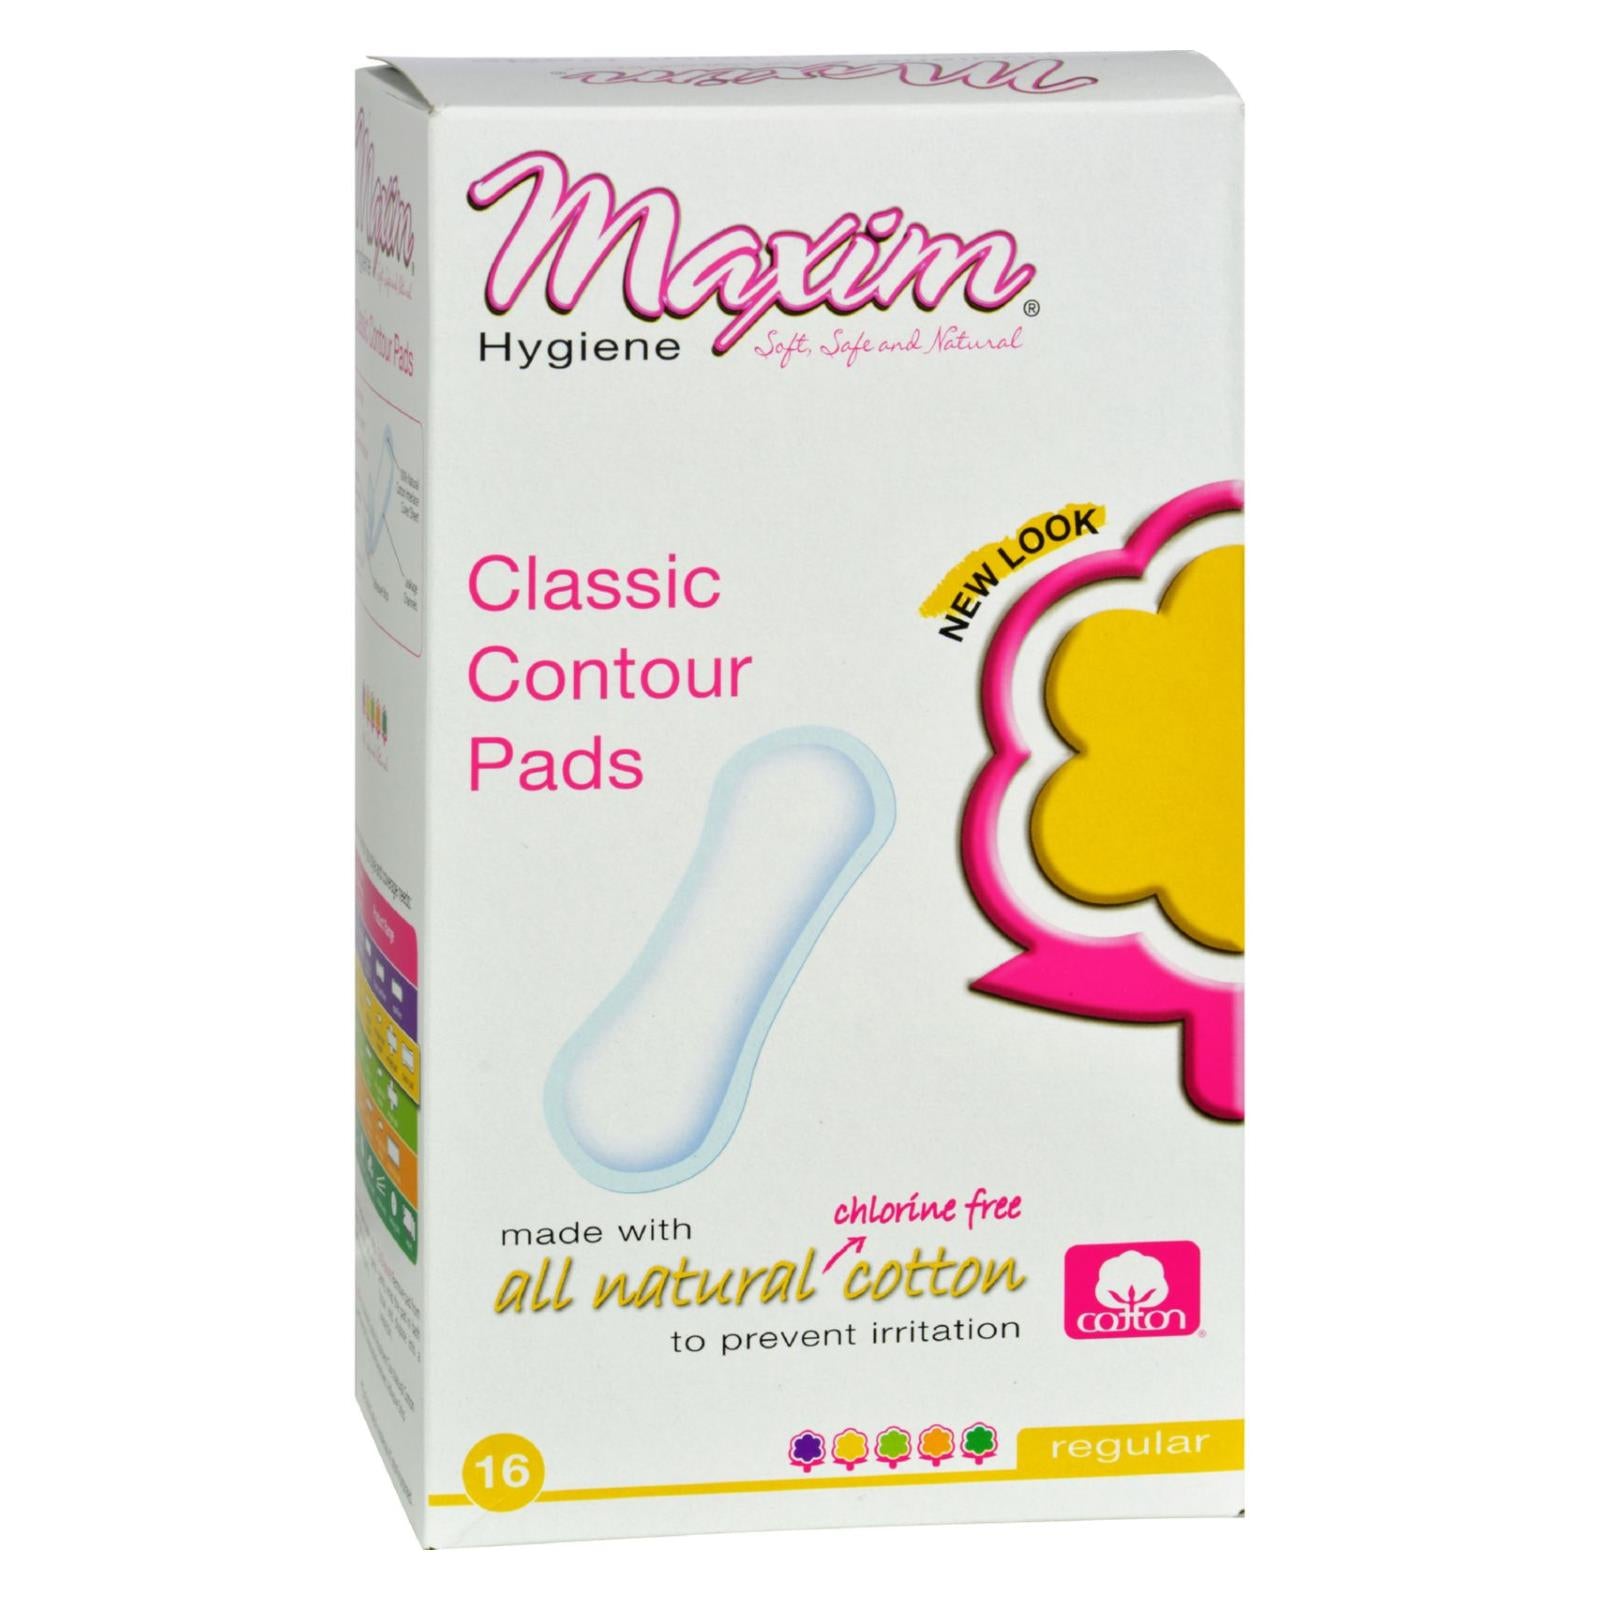 Maxim Hygiene Products, Maxim Hygiene Serviettes hygiéniques en coton naturel Classic Contour Regular - 16 serviettes